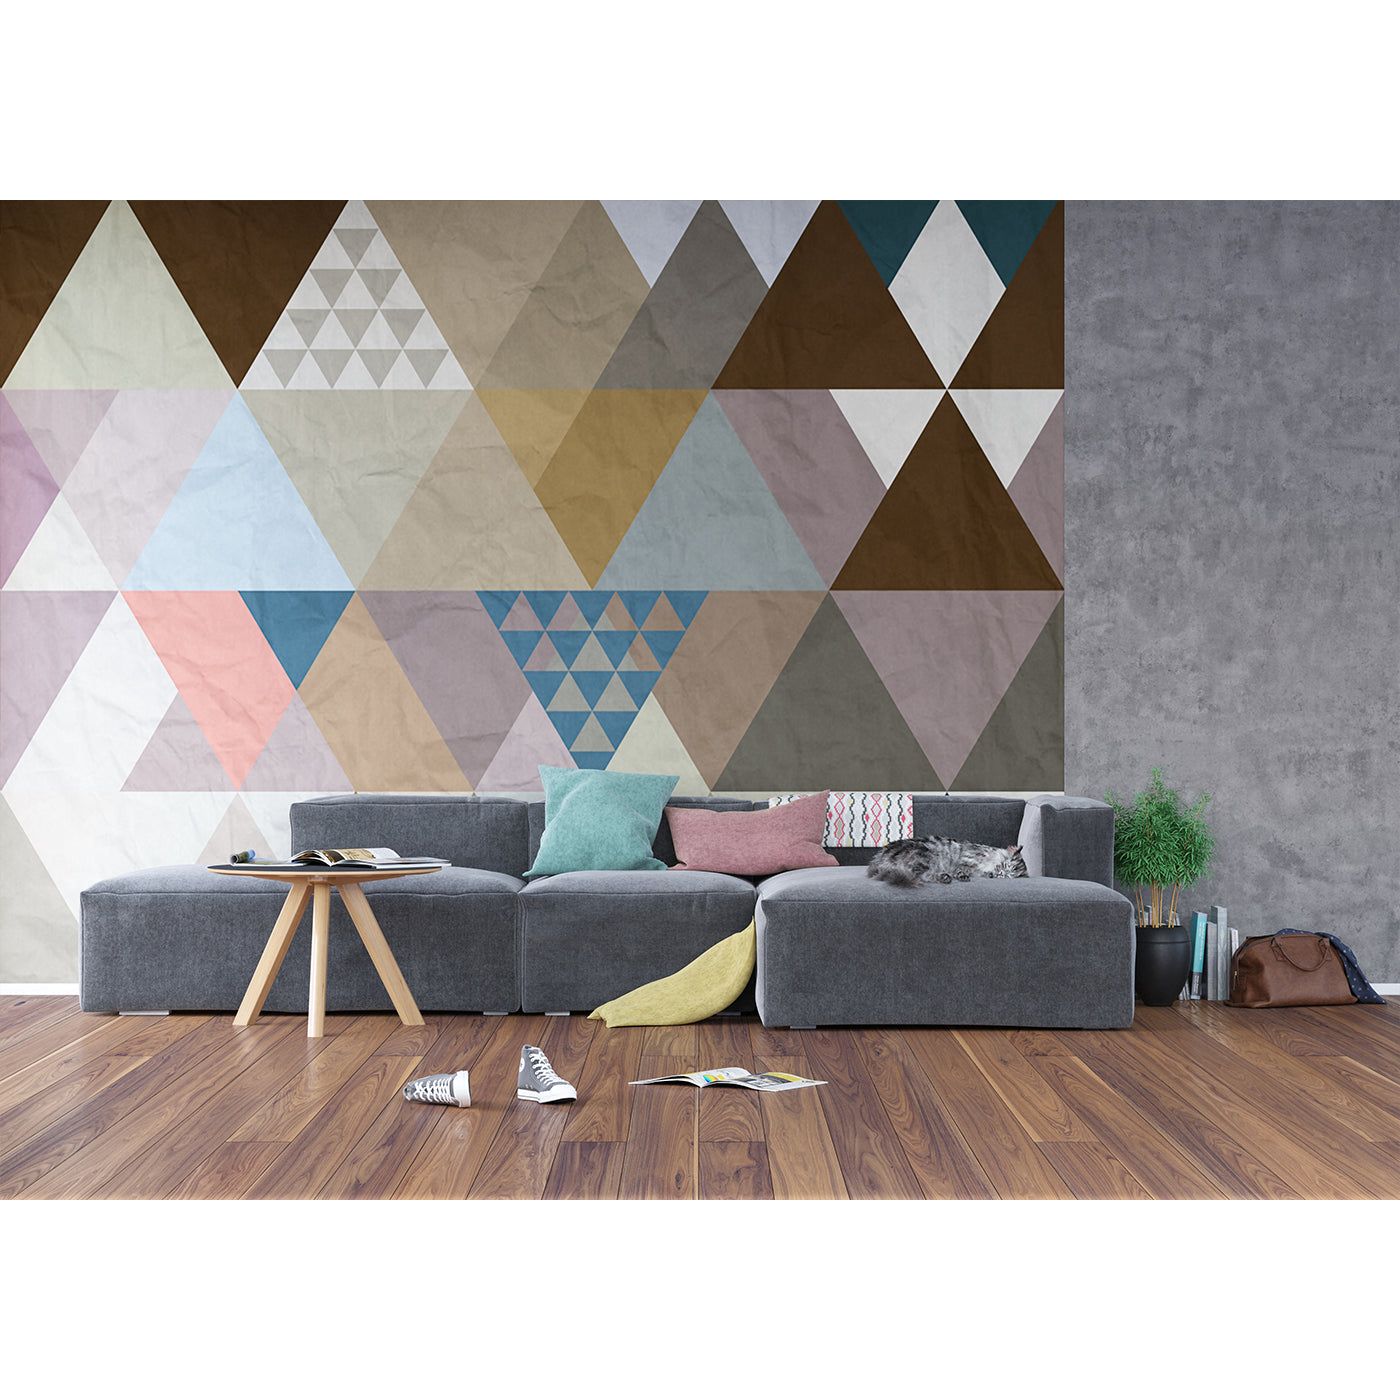 Modern Mosaic: Chic Triangular Wall Mural